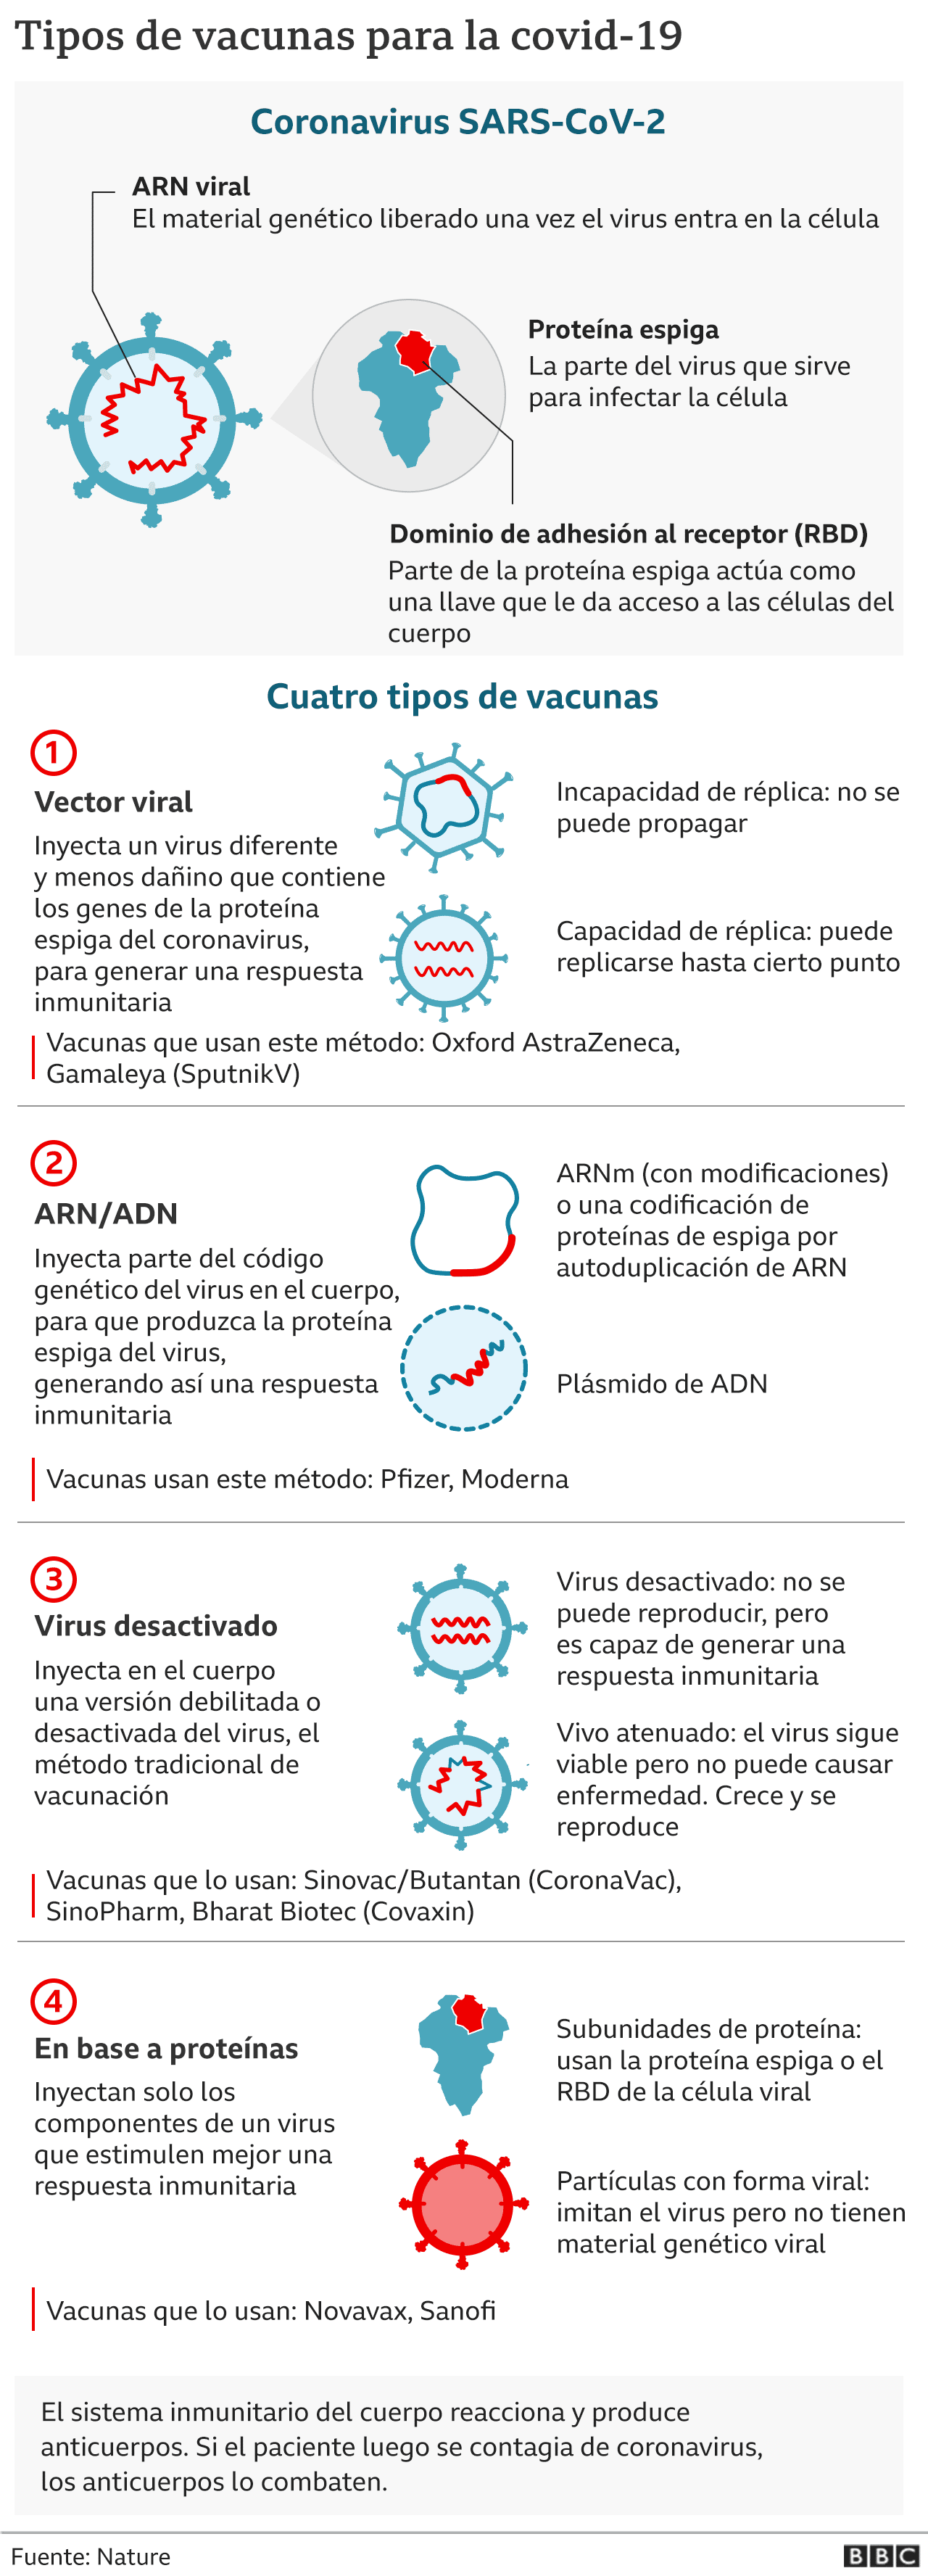 Vacunas disponibles en Argentina